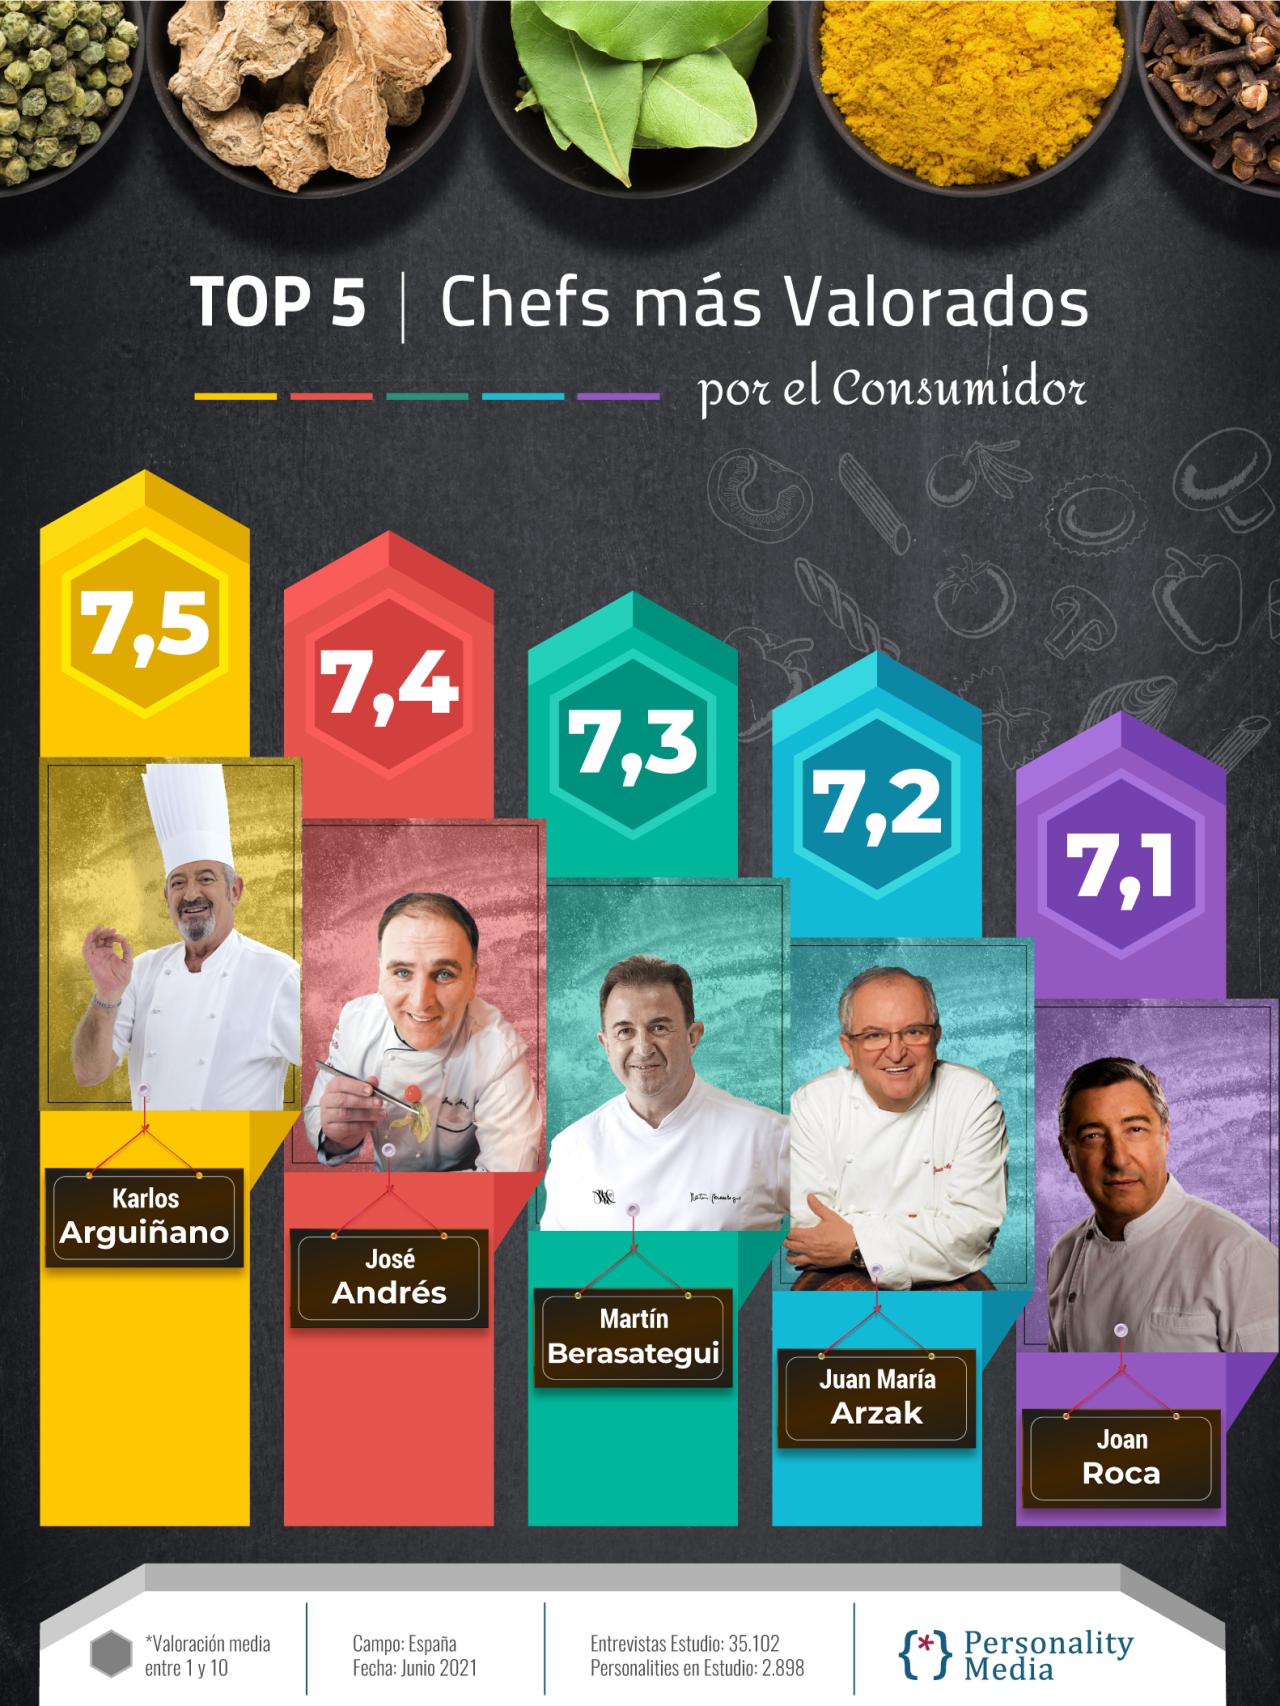 Este es el Top 5 de los chefs más valorados por el consumidor.